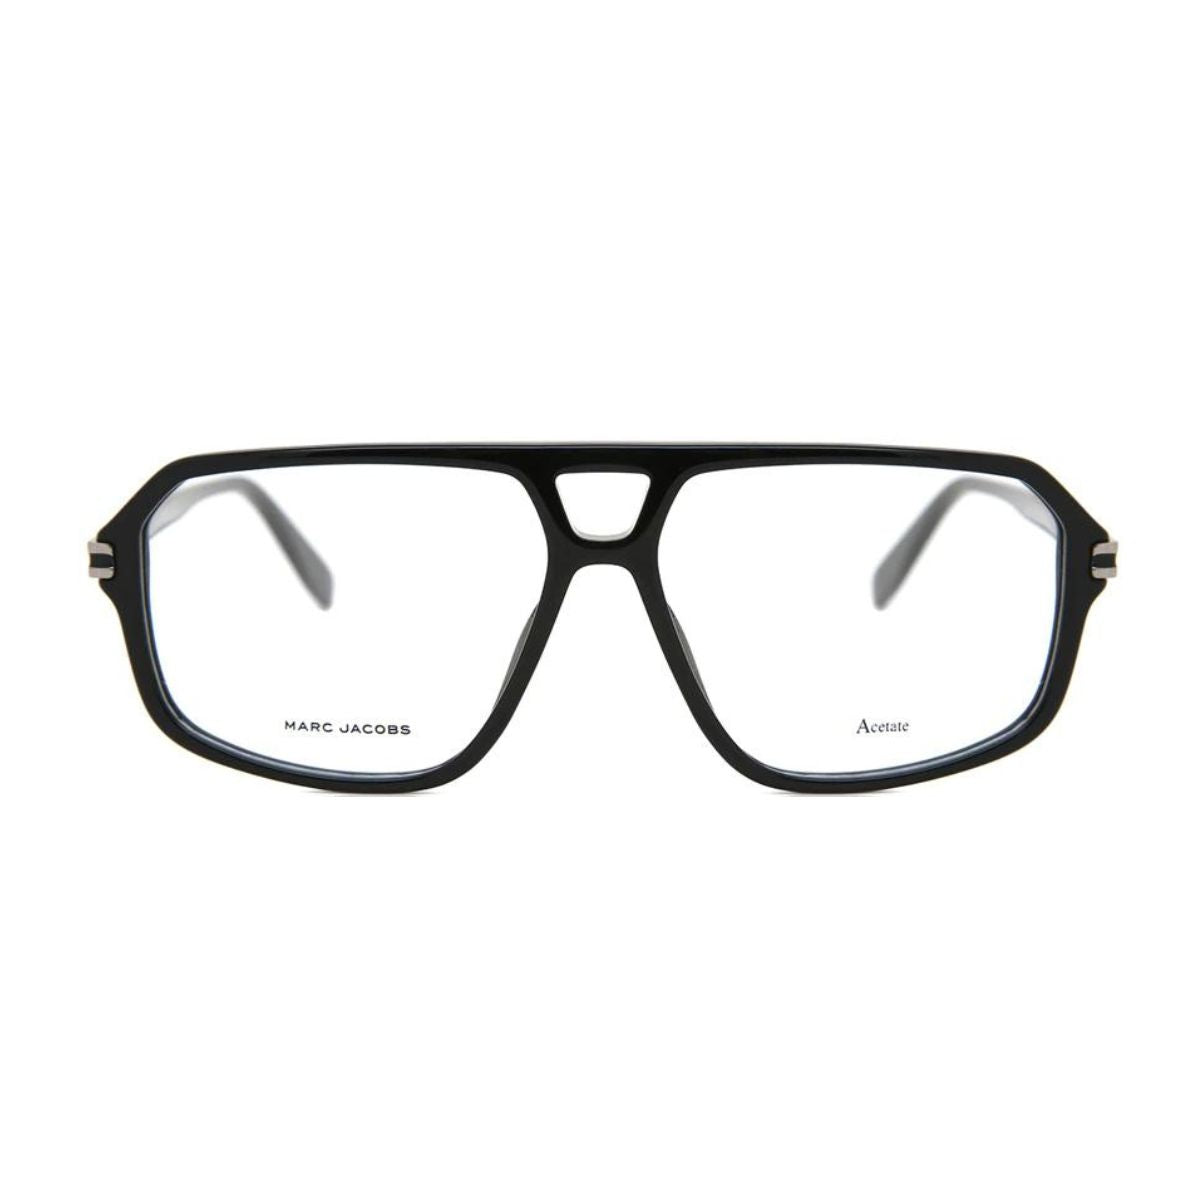 " buy The Marc Jacobs 471 807 aviator eyeglasses frame for men's at optorium"